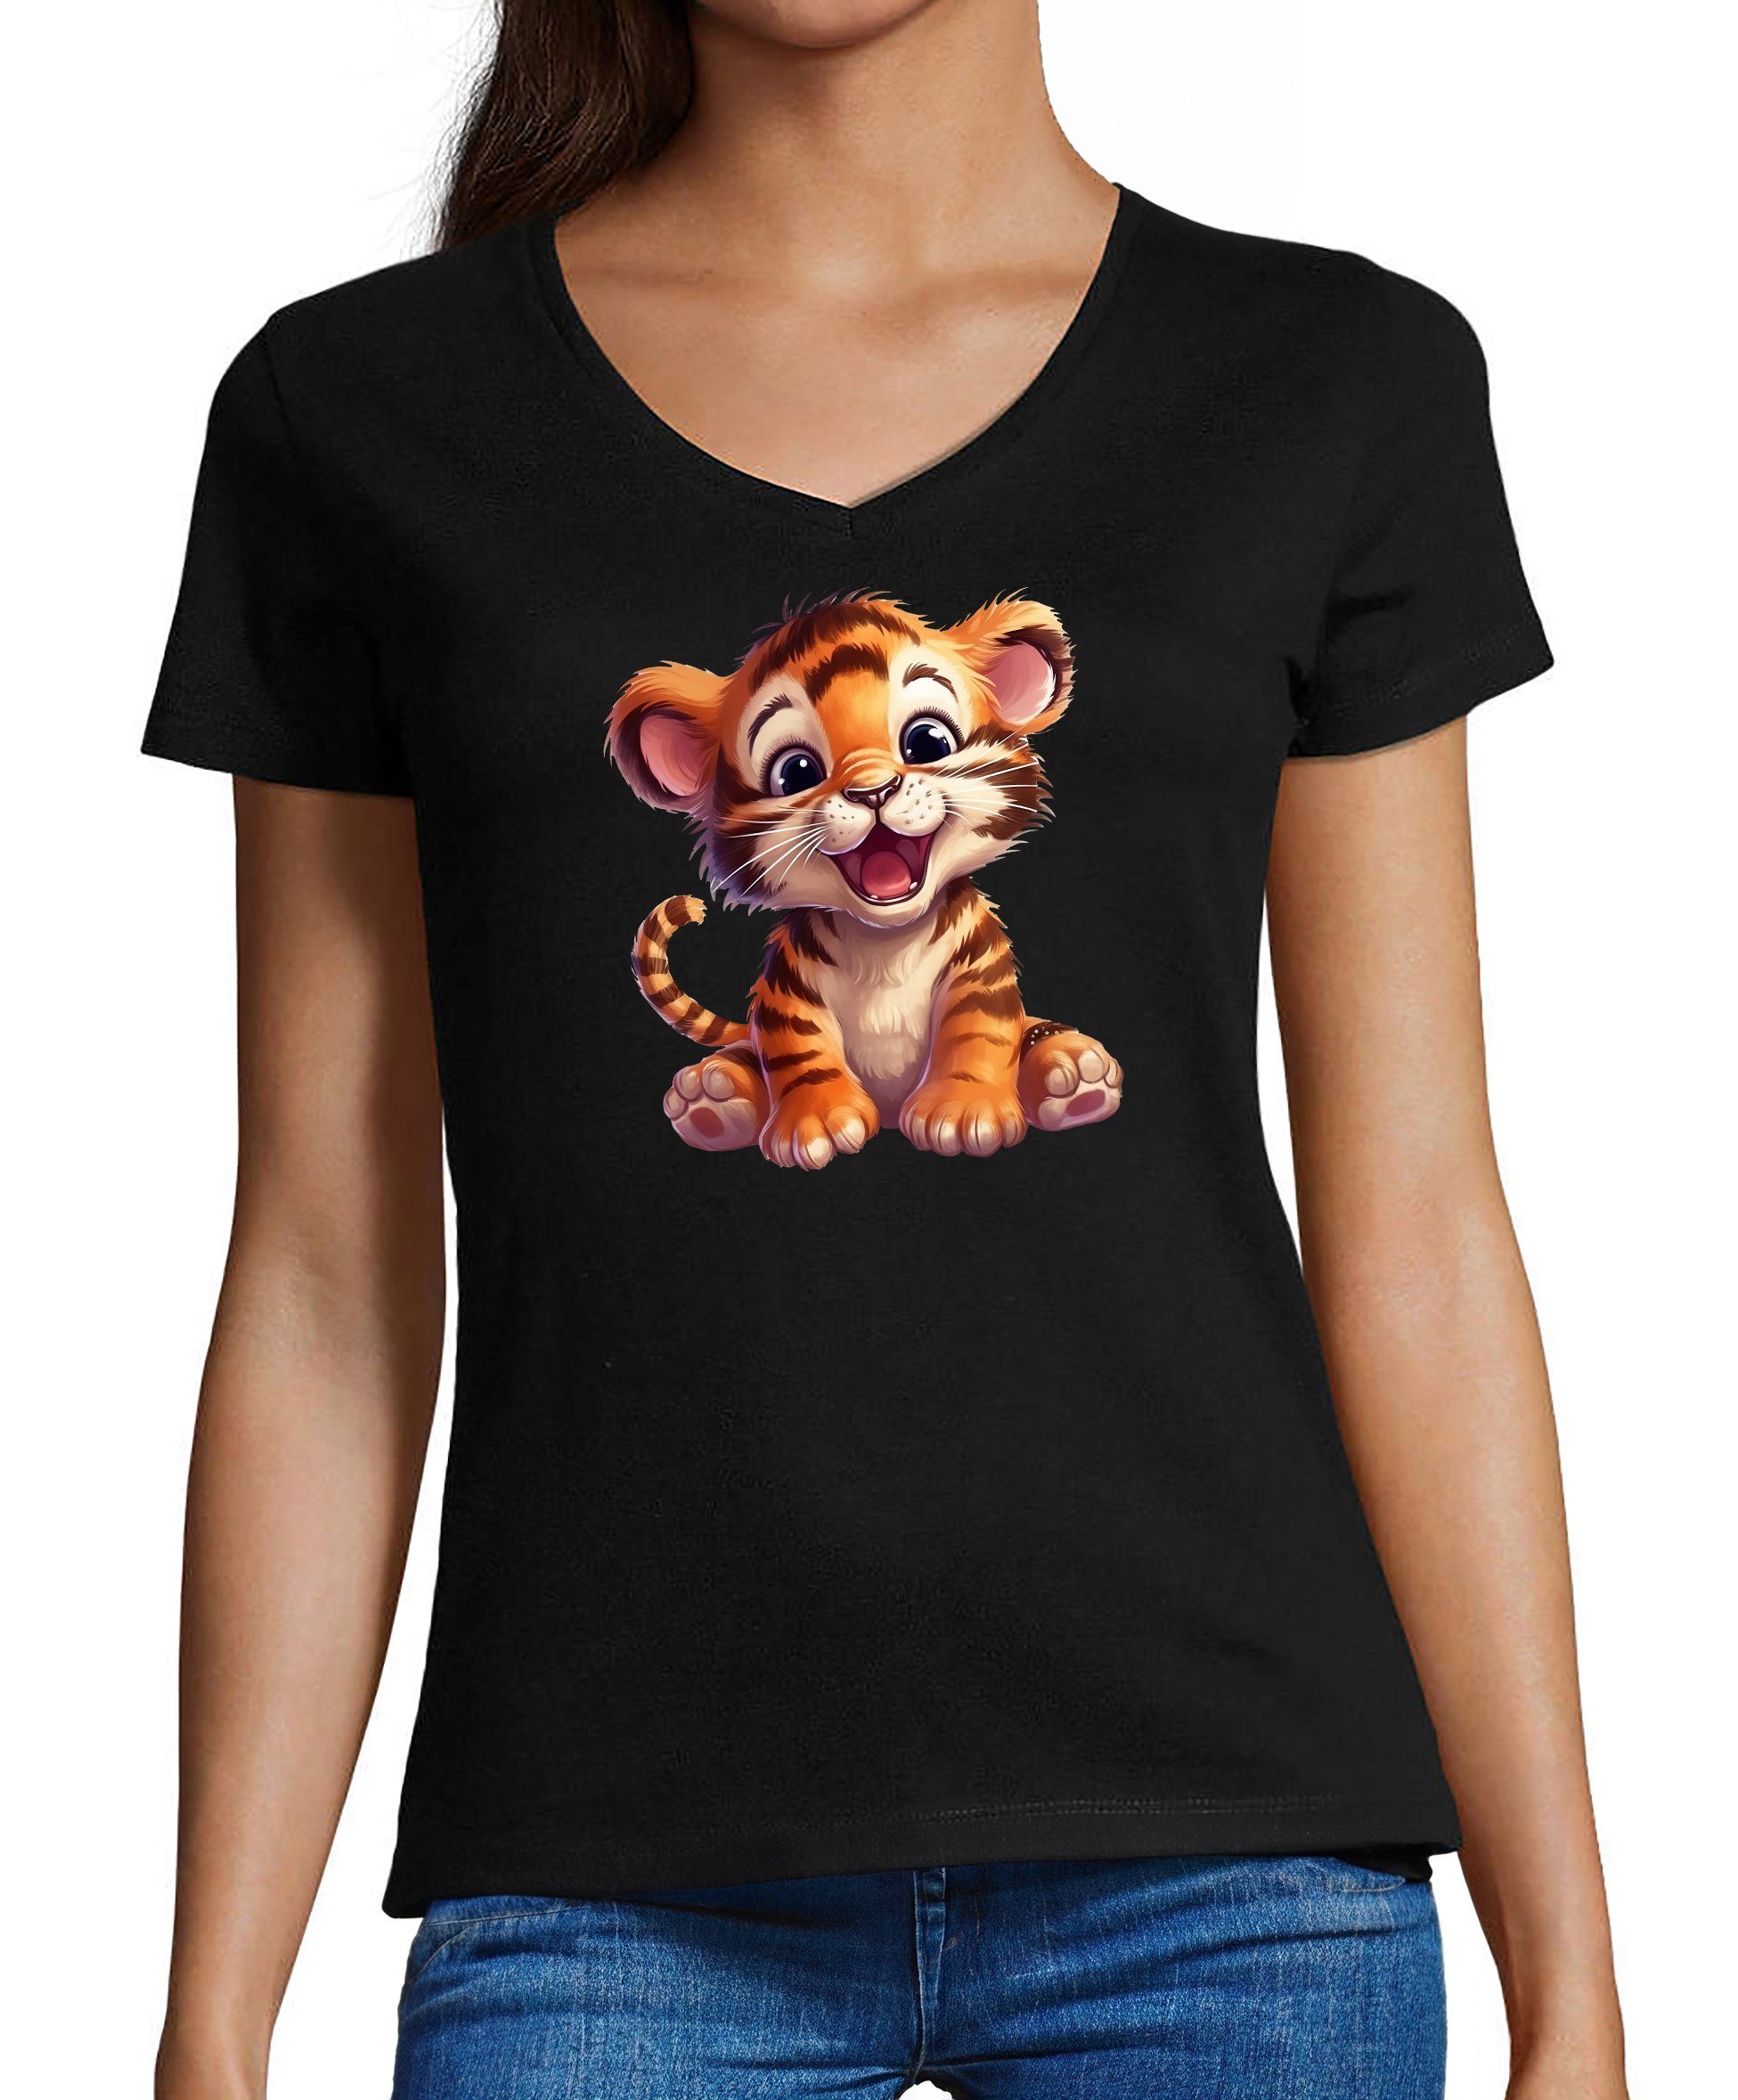 MyDesign24 T-Shirt Damen Wildtier Print Shirt - Baby Tiger V-Ausschnitt Baumwollshirt mit Aufdruck Slim Fit, i266